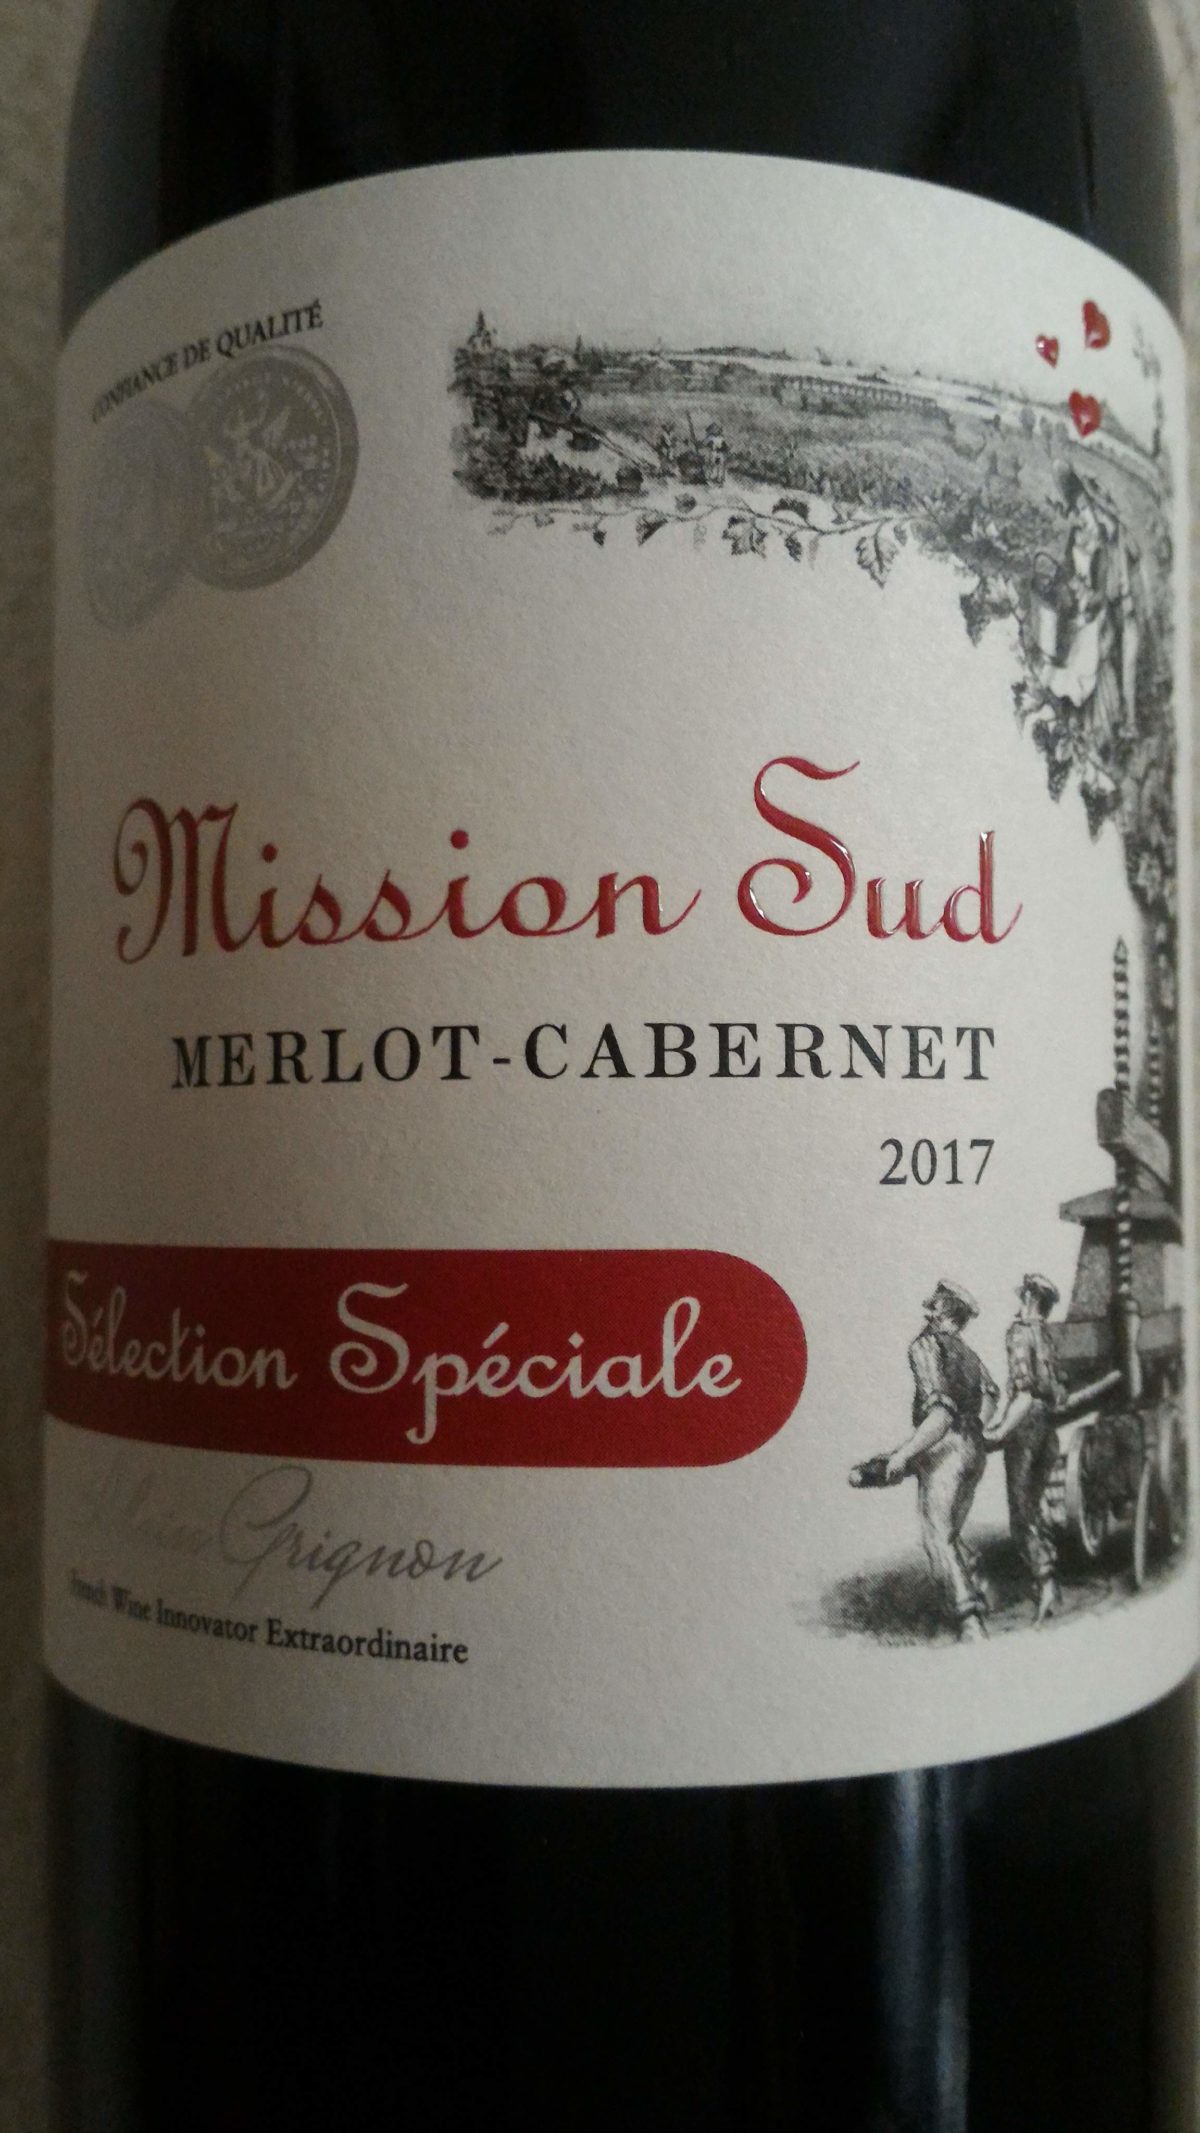 1000～2000円で楽しむ赤ワイン「フランスのミッション・シュッド」